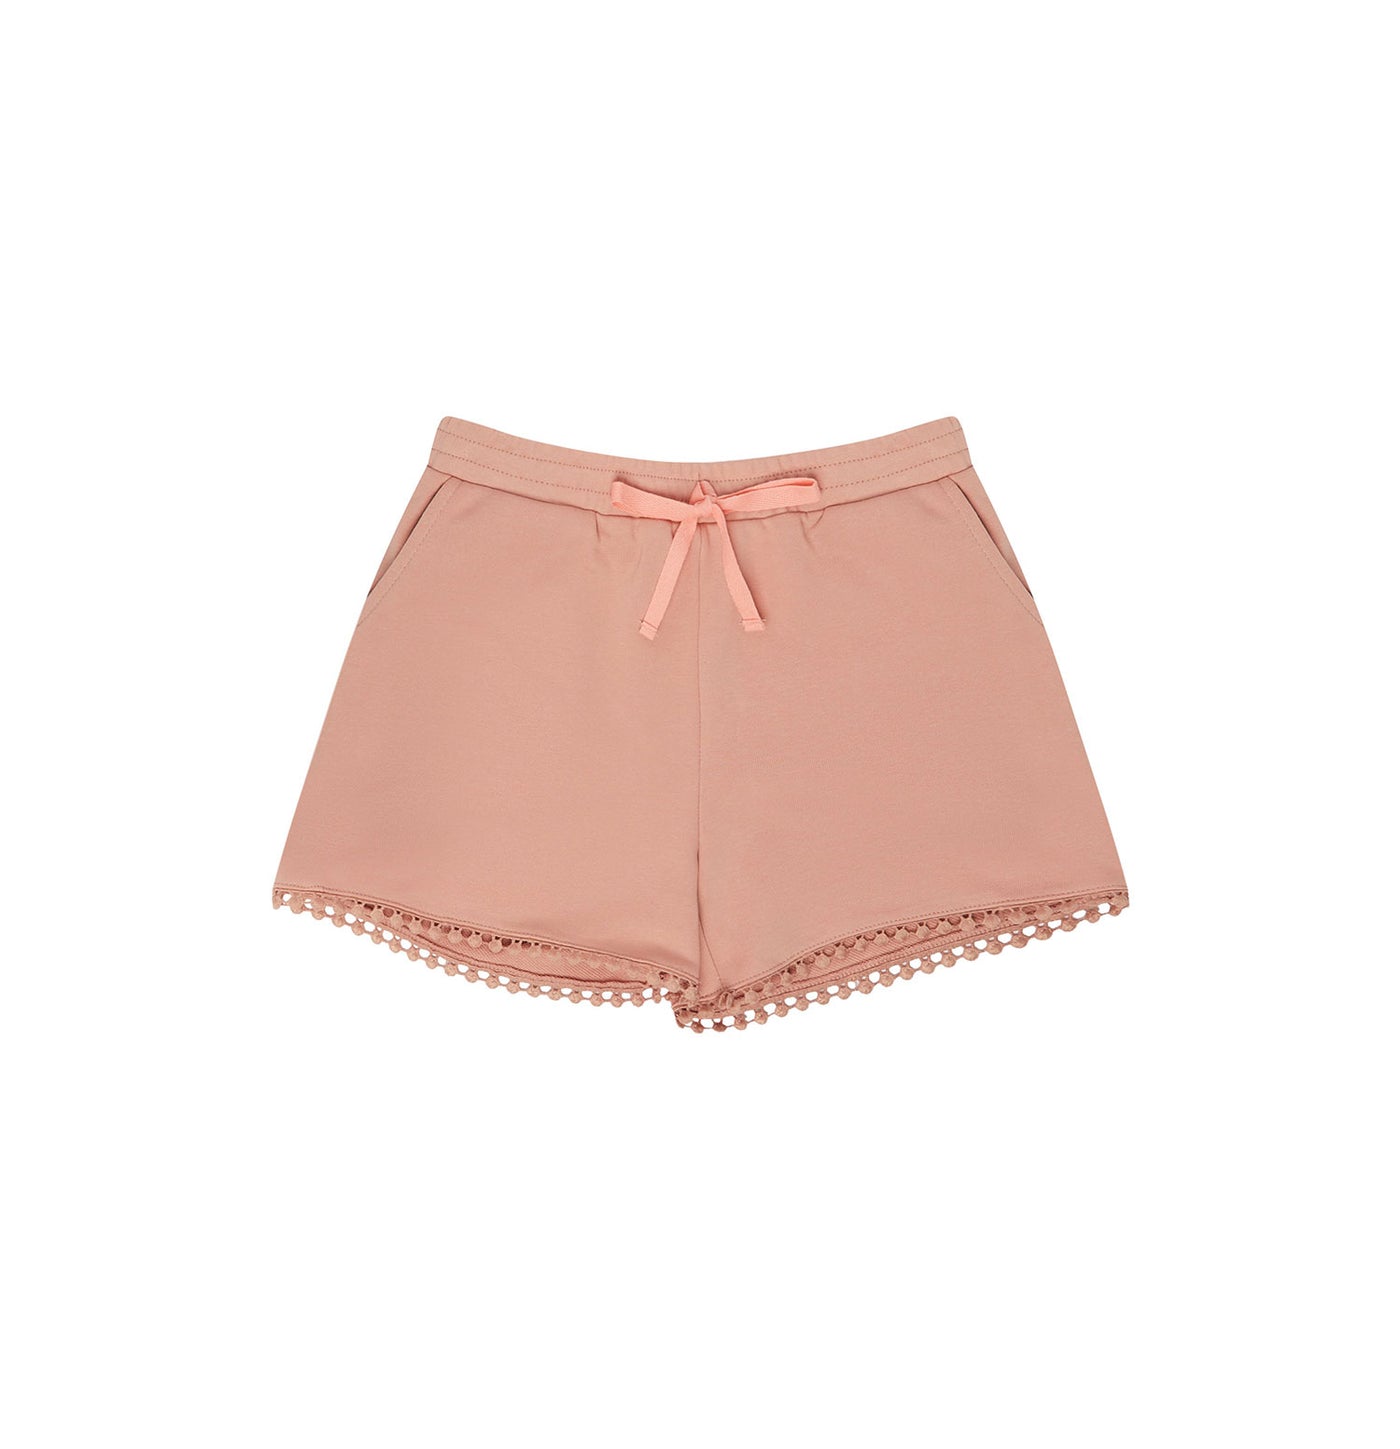 Blush pink shorts